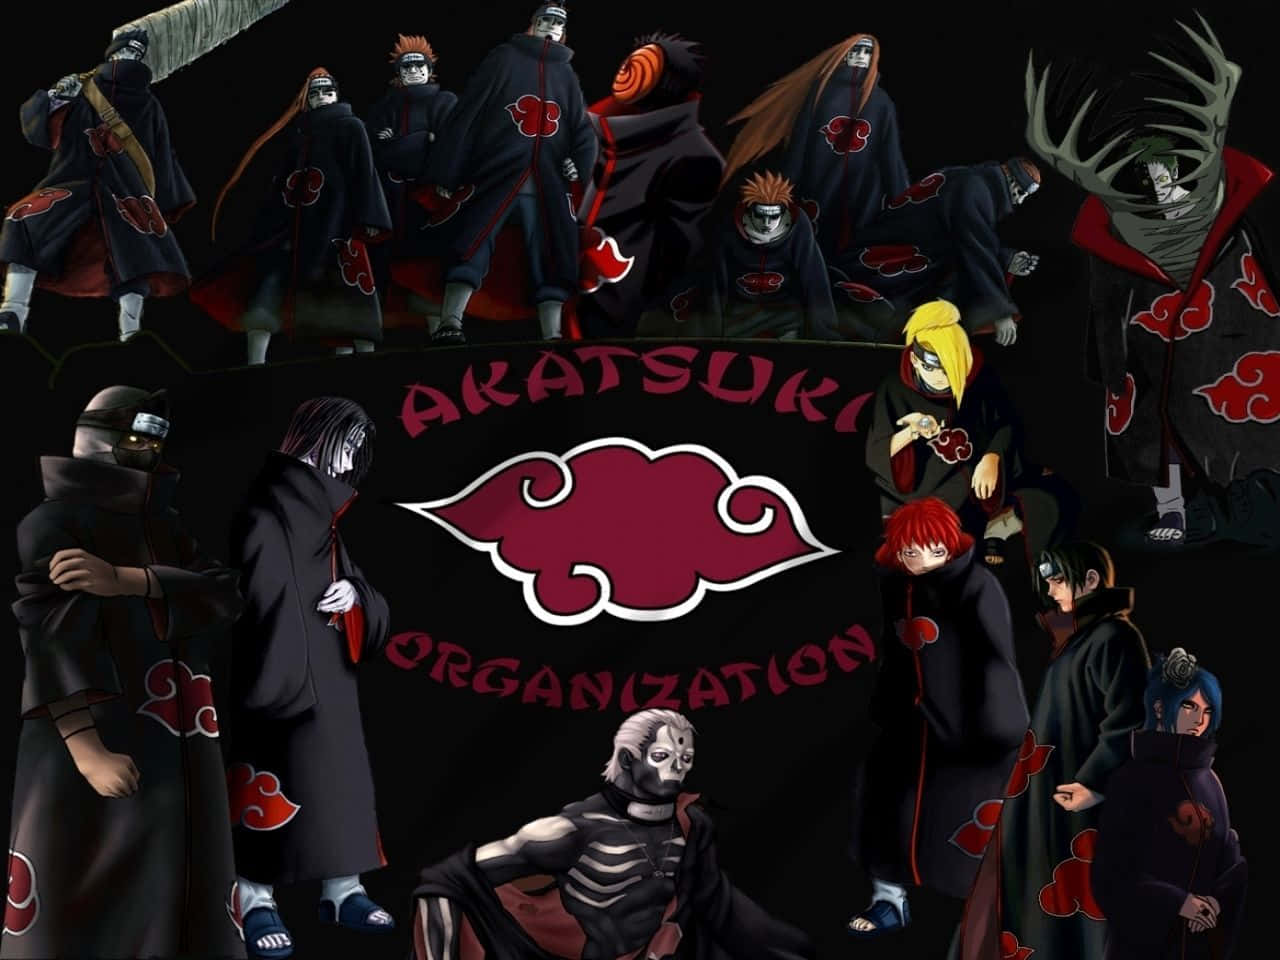 Fondode Pantalla De La Organización Akatsuki De Naruto. Fondo de pantalla